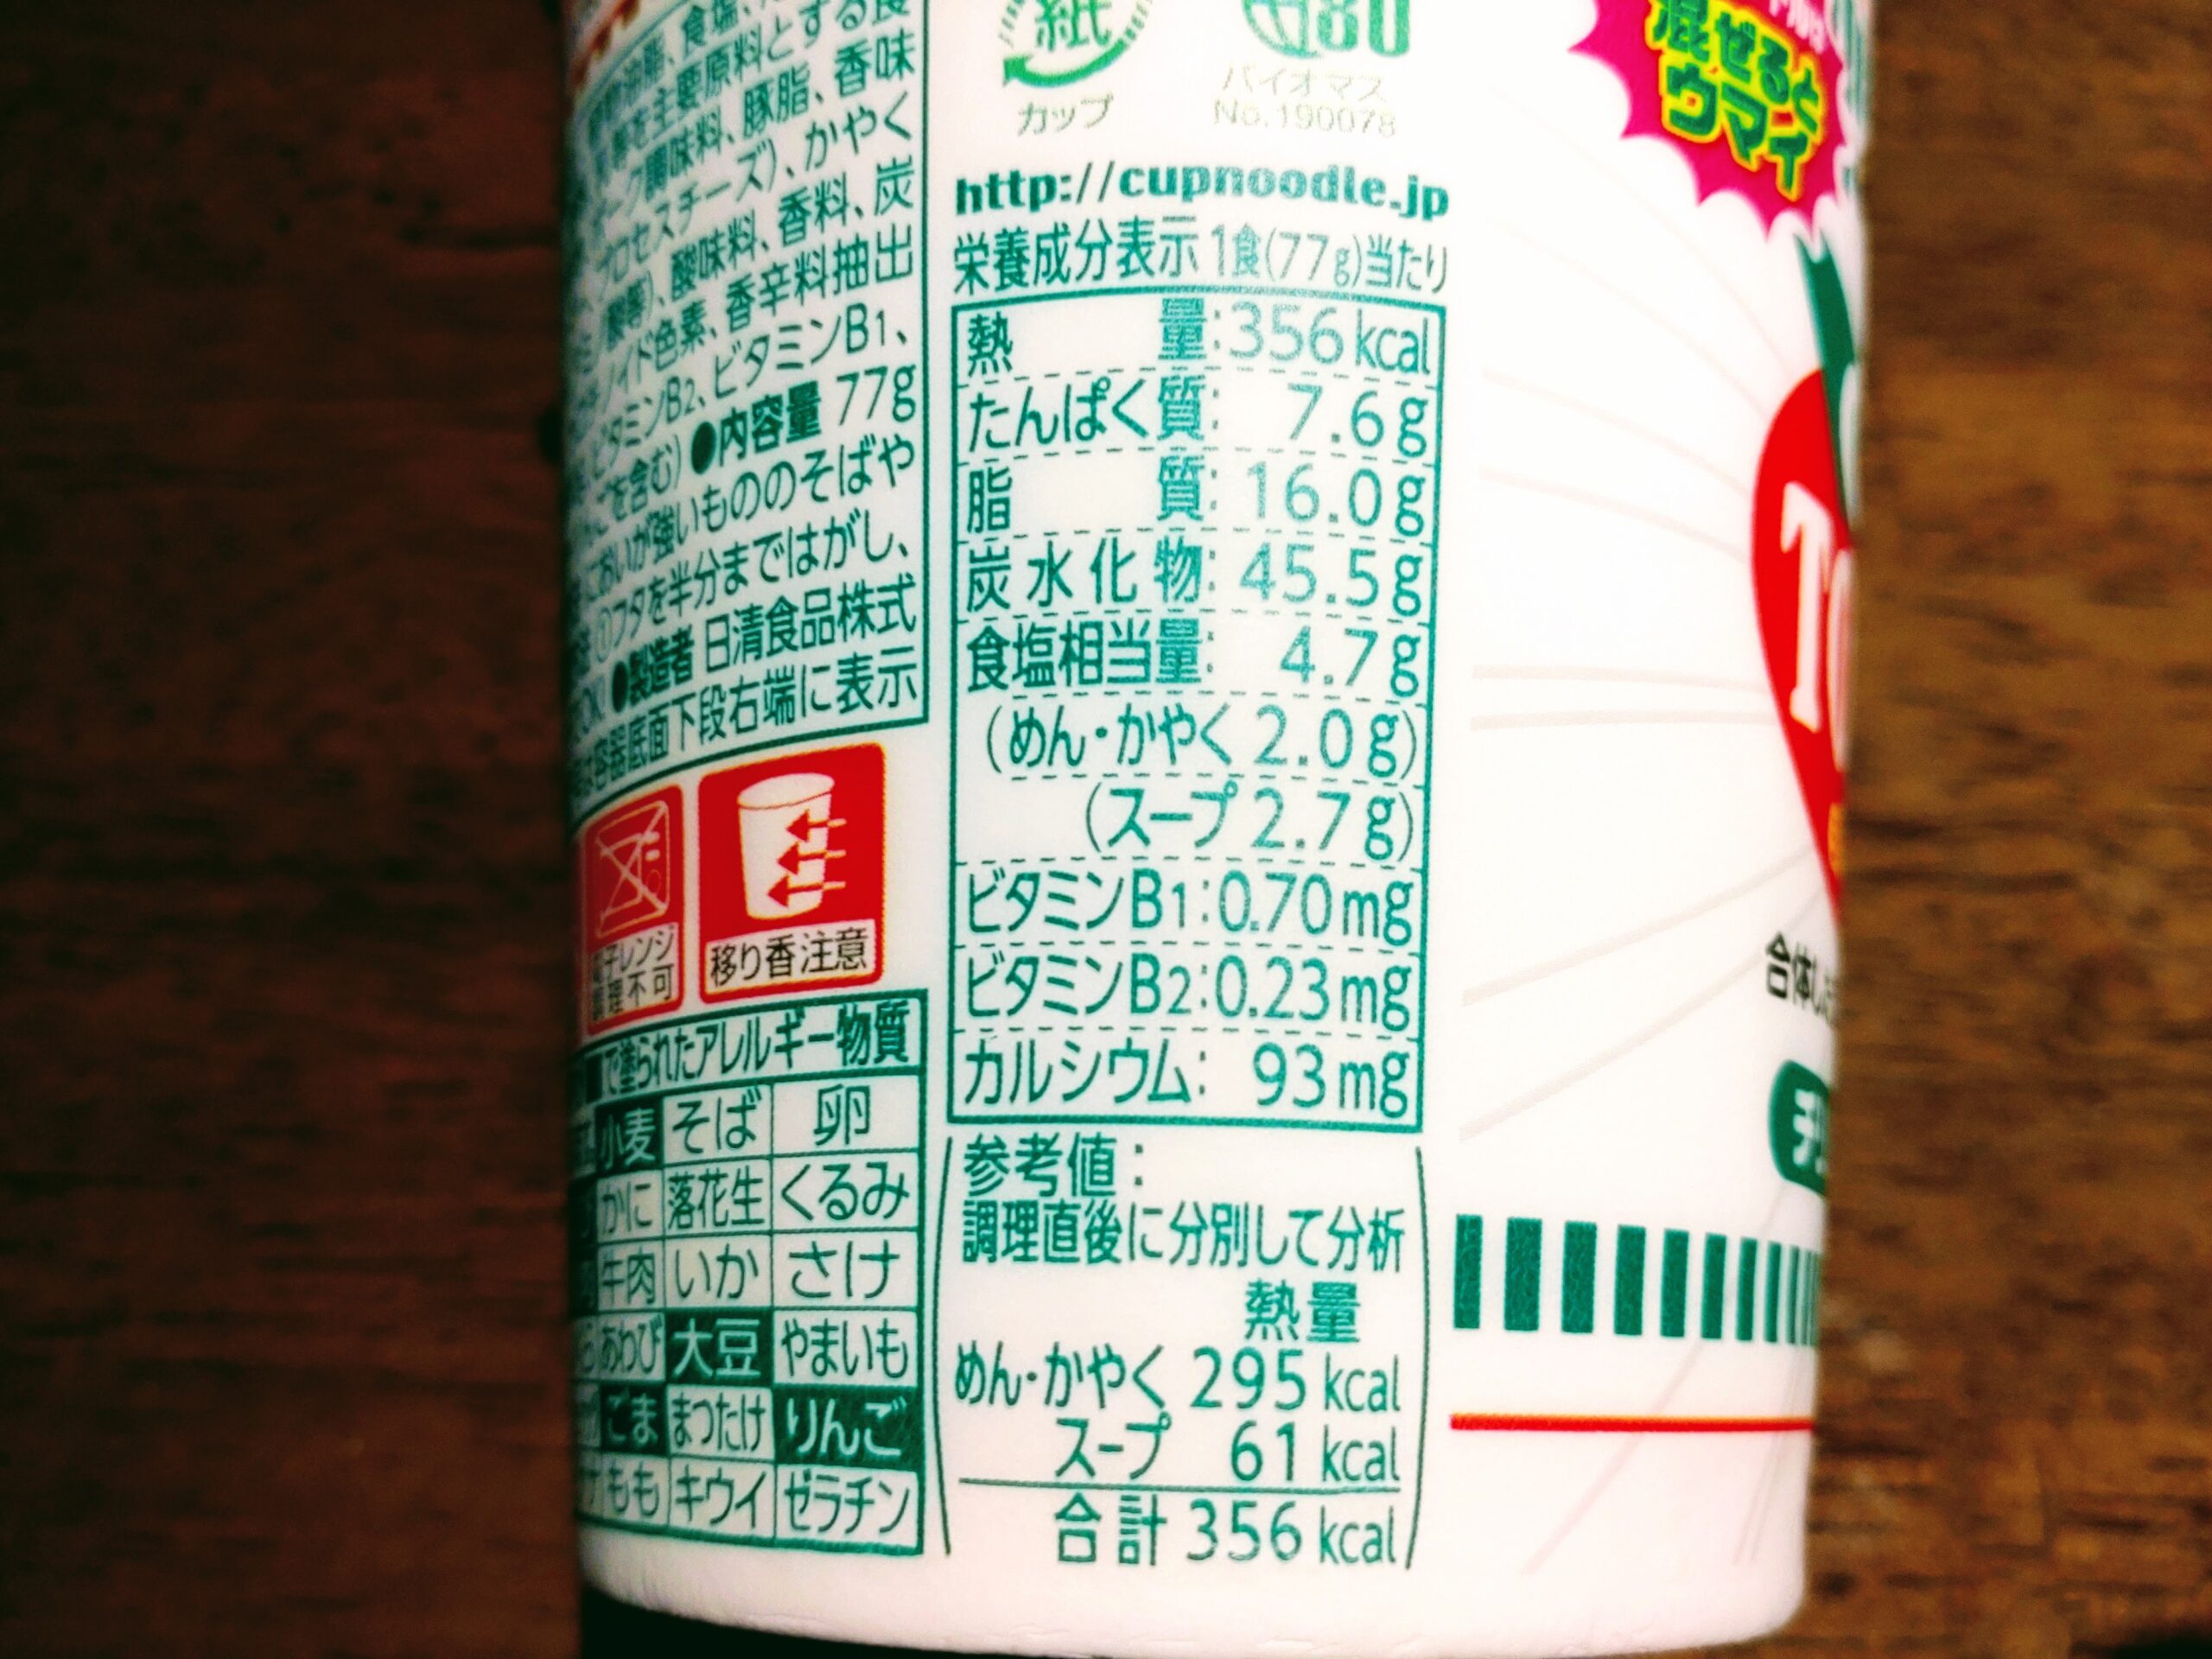 カップヌードル スーパー合体シリーズ チリトマト&トムヤムクンの栄養成分表示